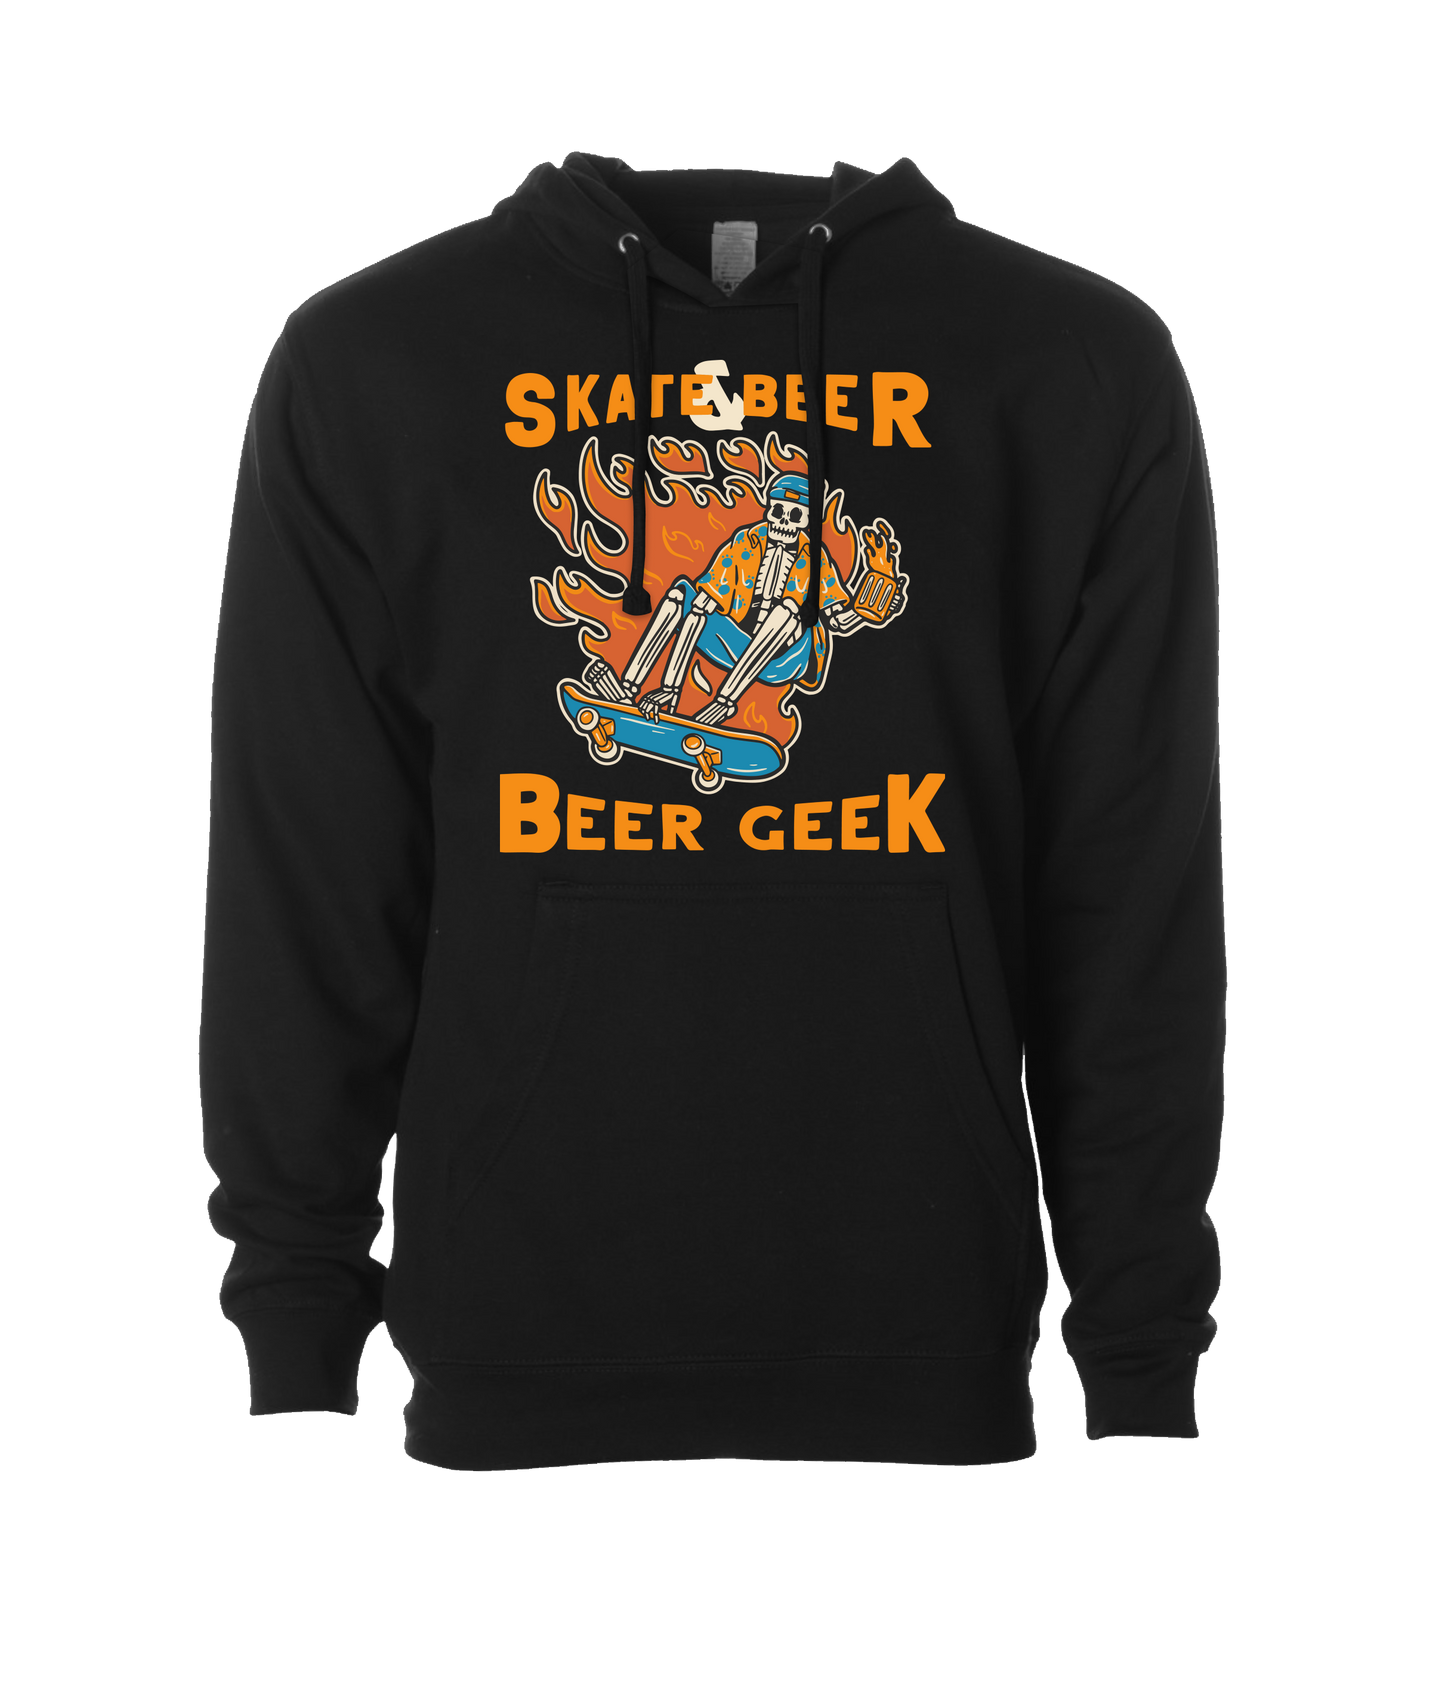 Beer Geek - Skate Beer Logo - Black Hoodie